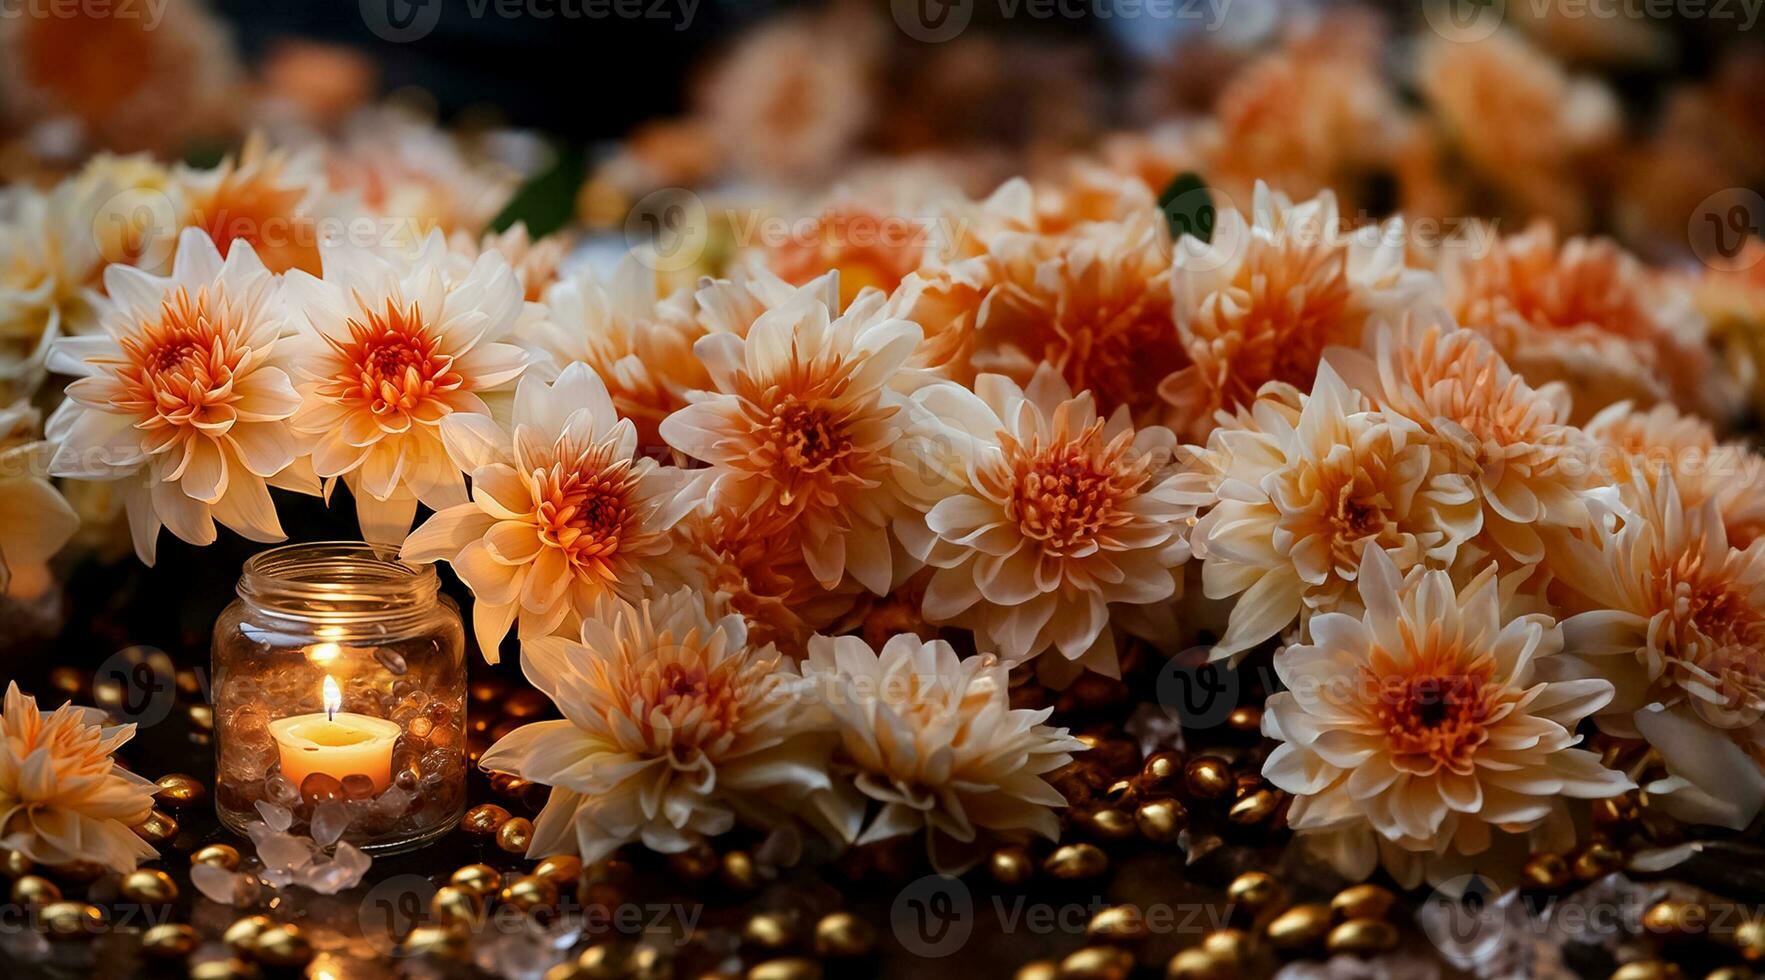 elegant bloemen decoraties verrijkend de heilig sfeer gedurende diwali puja ceremonies foto